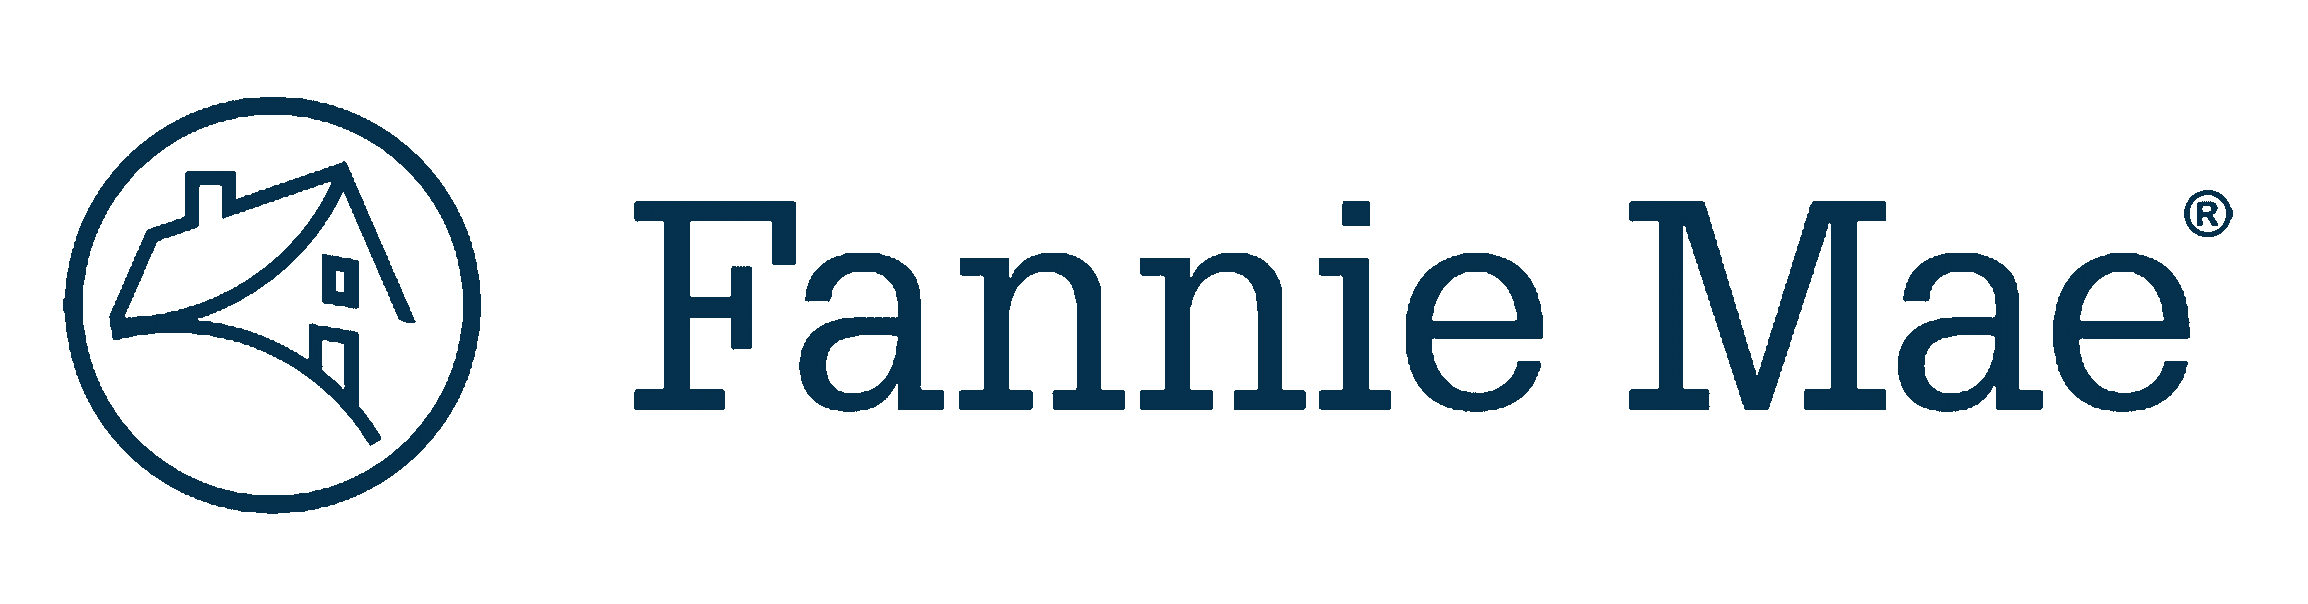 Fannie Mae Logo.png